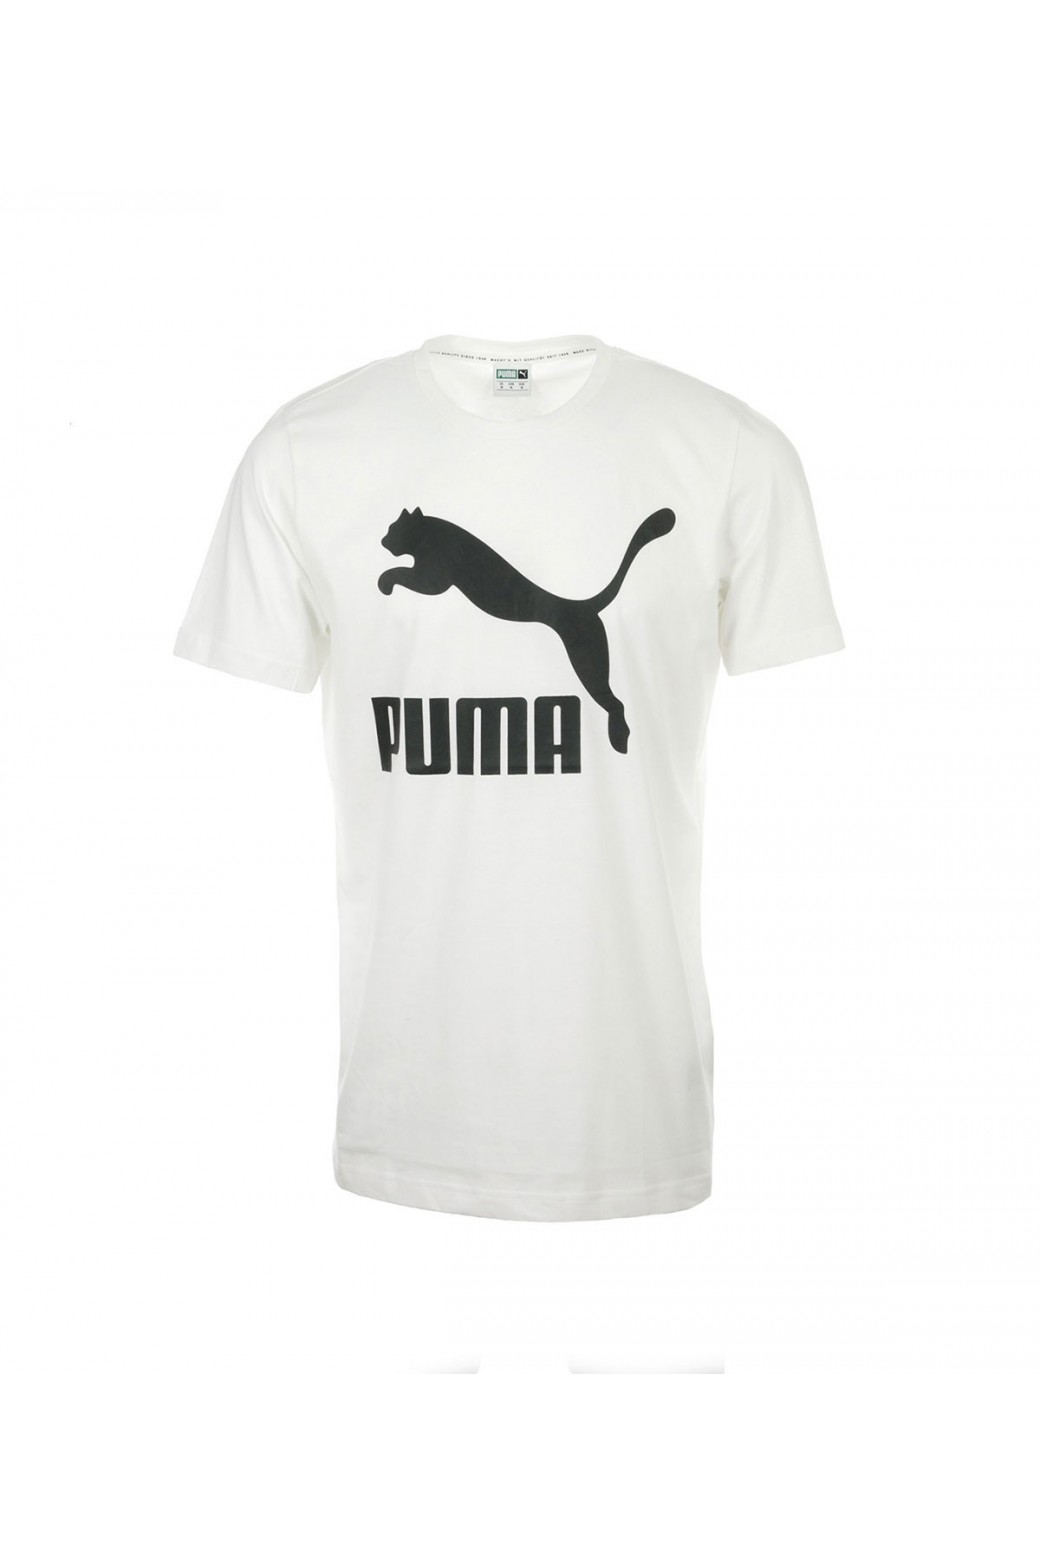 Camiseta Puma Classics – Blanca